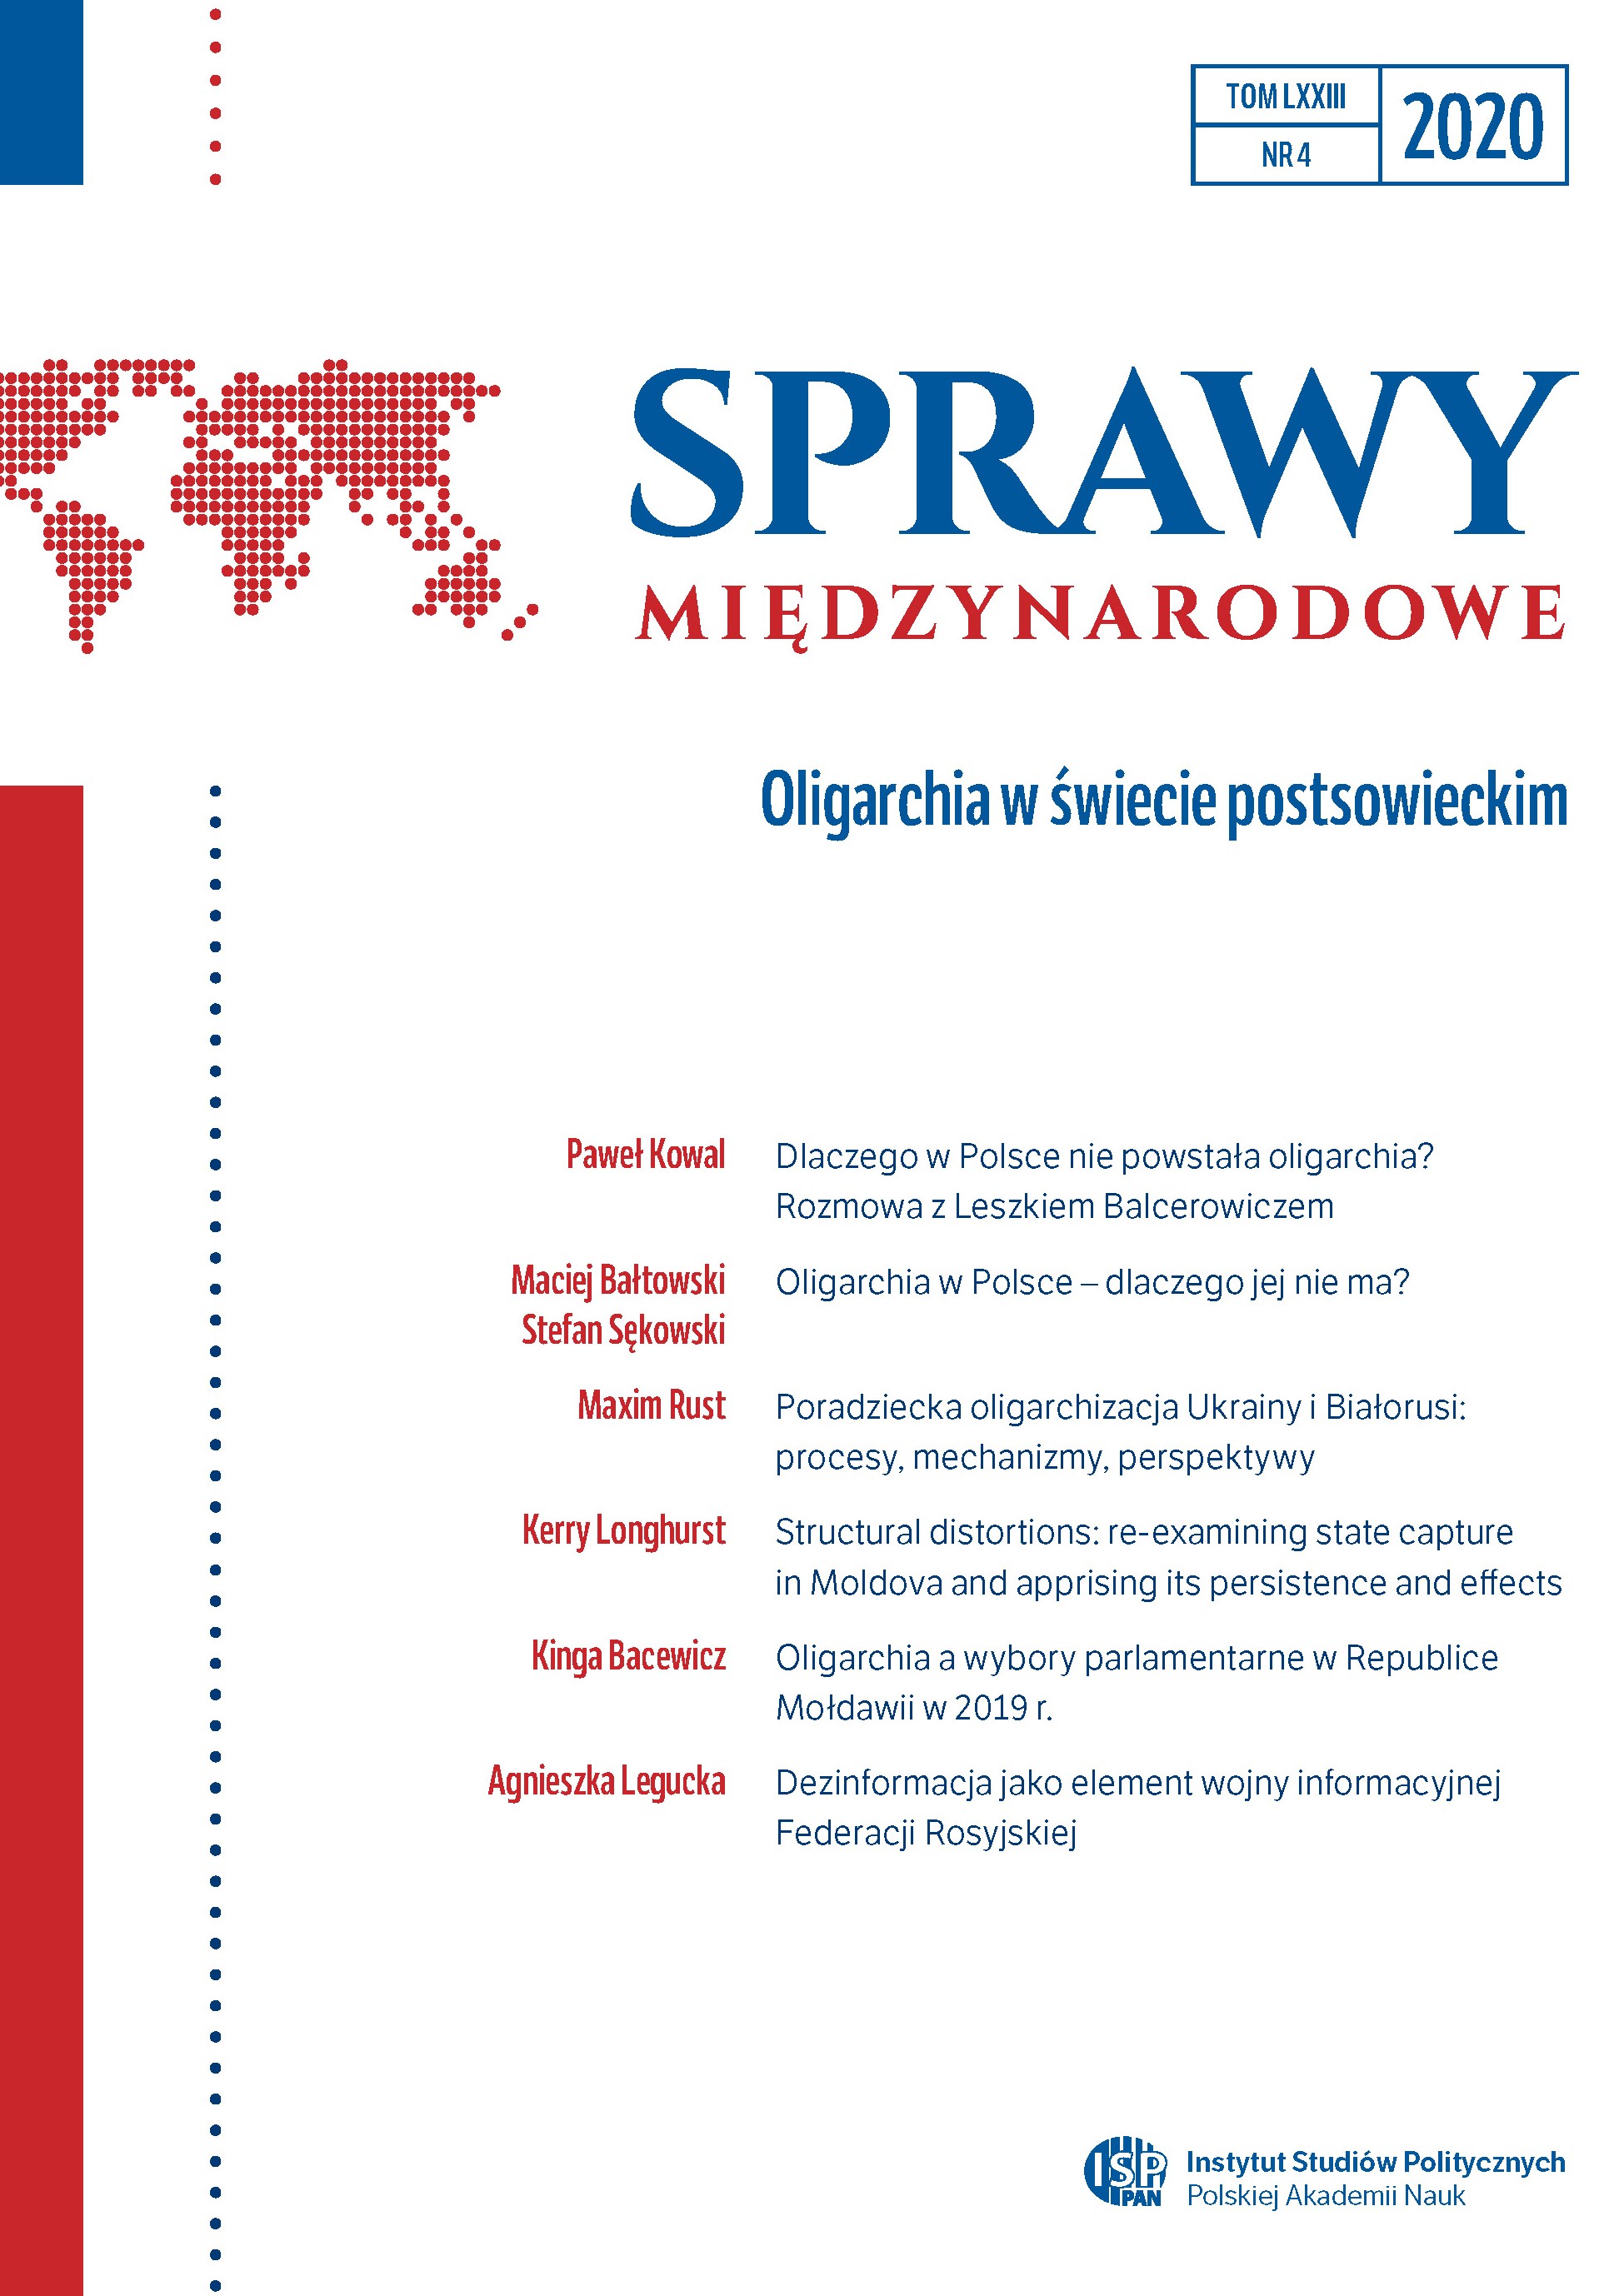 Oligarchia w Polsce ‒ dlaczego jej nie ma?